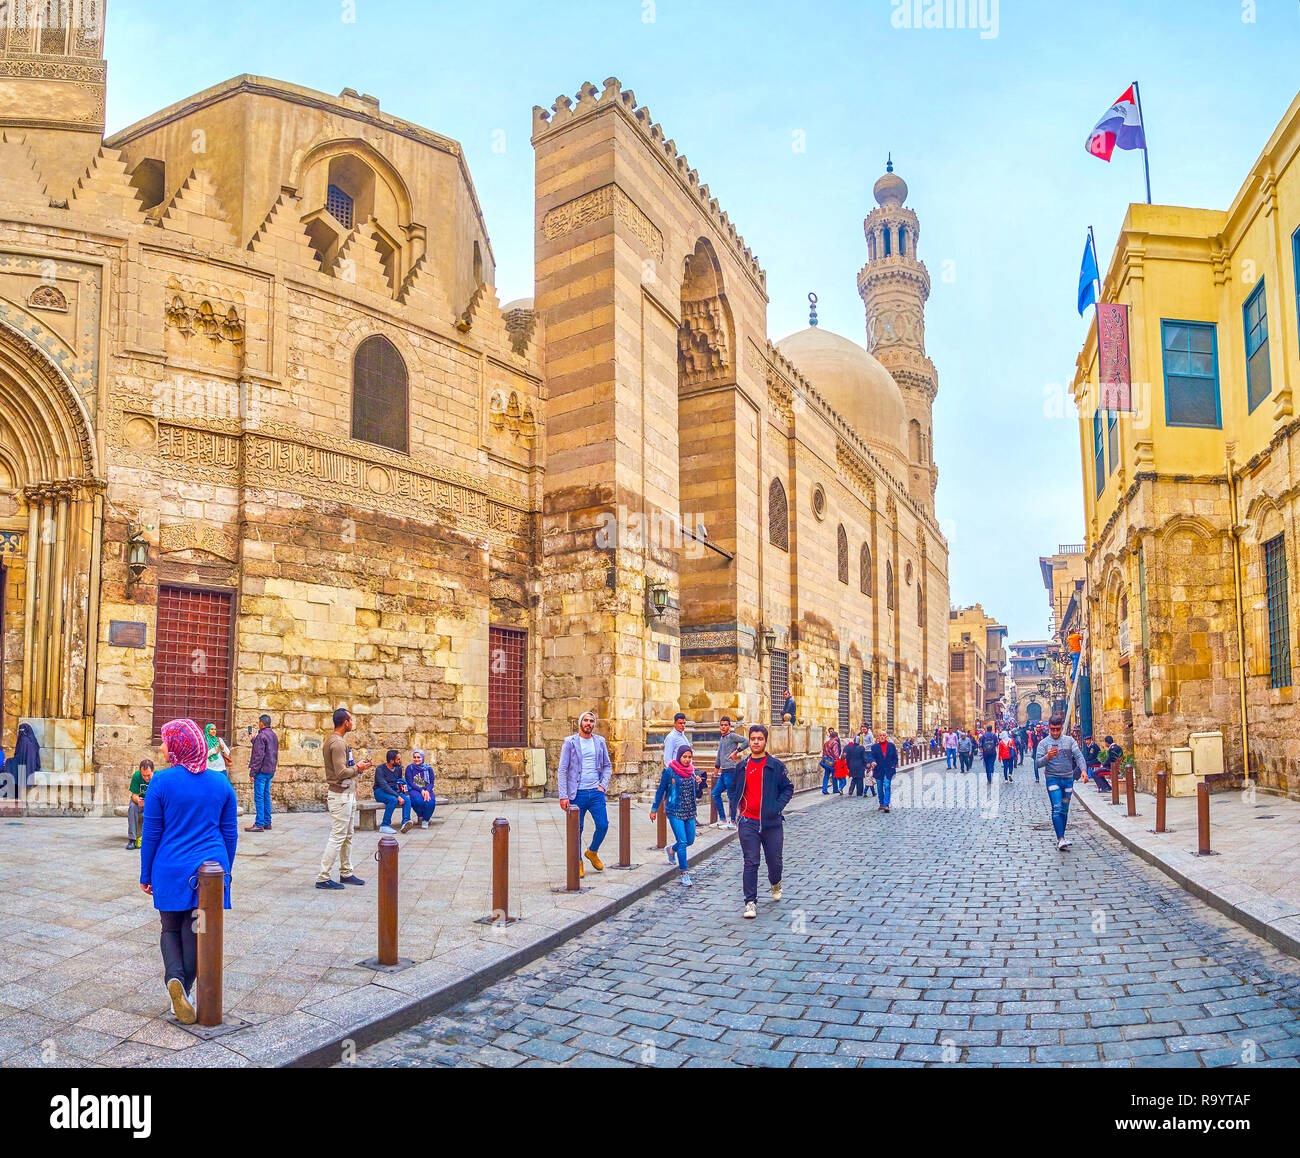 Kairo, Ägypten - Dezember 20, 2017: Historische Bauten auf Al-Muizz Straße sind das Symbol des mittelalterlichen islamischen Architektur von Kairo, Überlebende der Pr Stockfoto